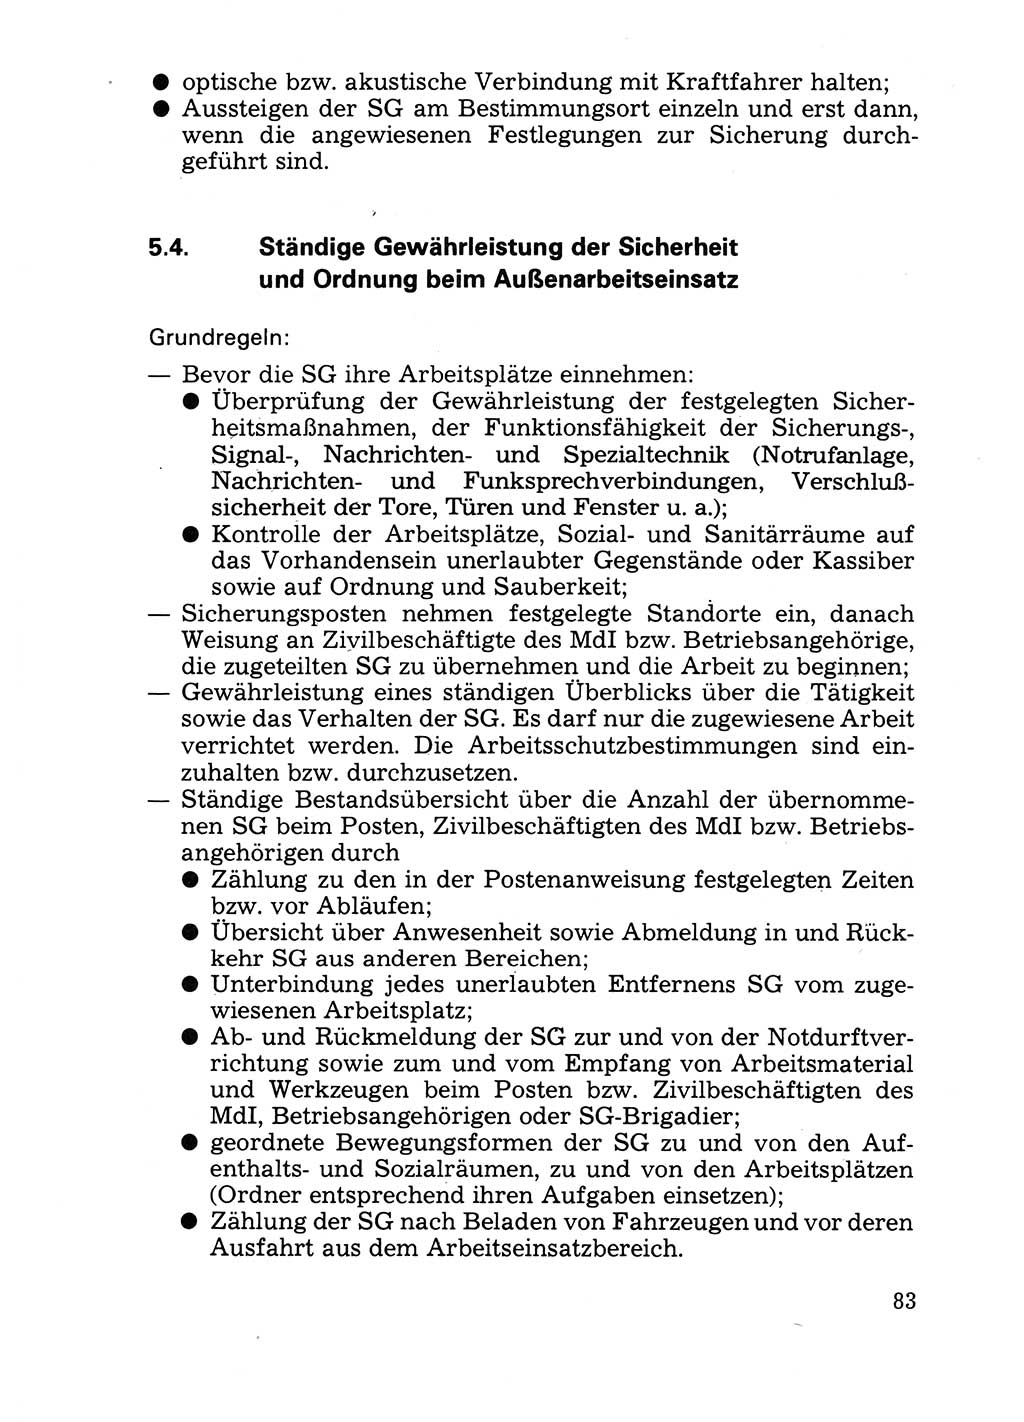 Handbuch für operative Dienste, Abteilung Strafvollzug (SV) [Ministerium des Innern (MdI) Deutsche Demokratische Republik (DDR)] 1981, Seite 83 (Hb. op. D. Abt. SV MdI DDR 1981, S. 83)